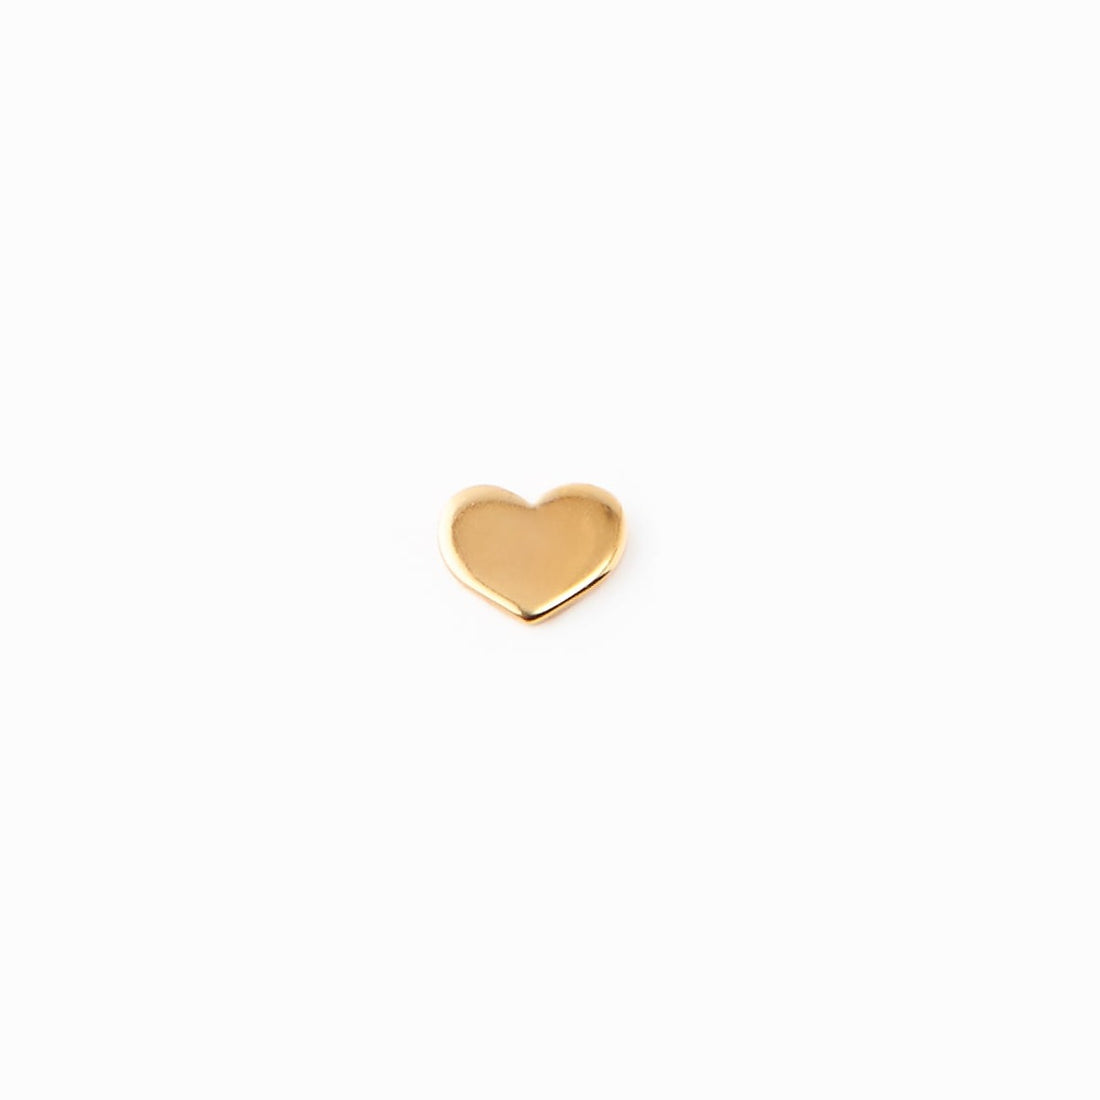 Bim earrings -Mix & Match heart stud  Gold vermeil  whatnotz.com